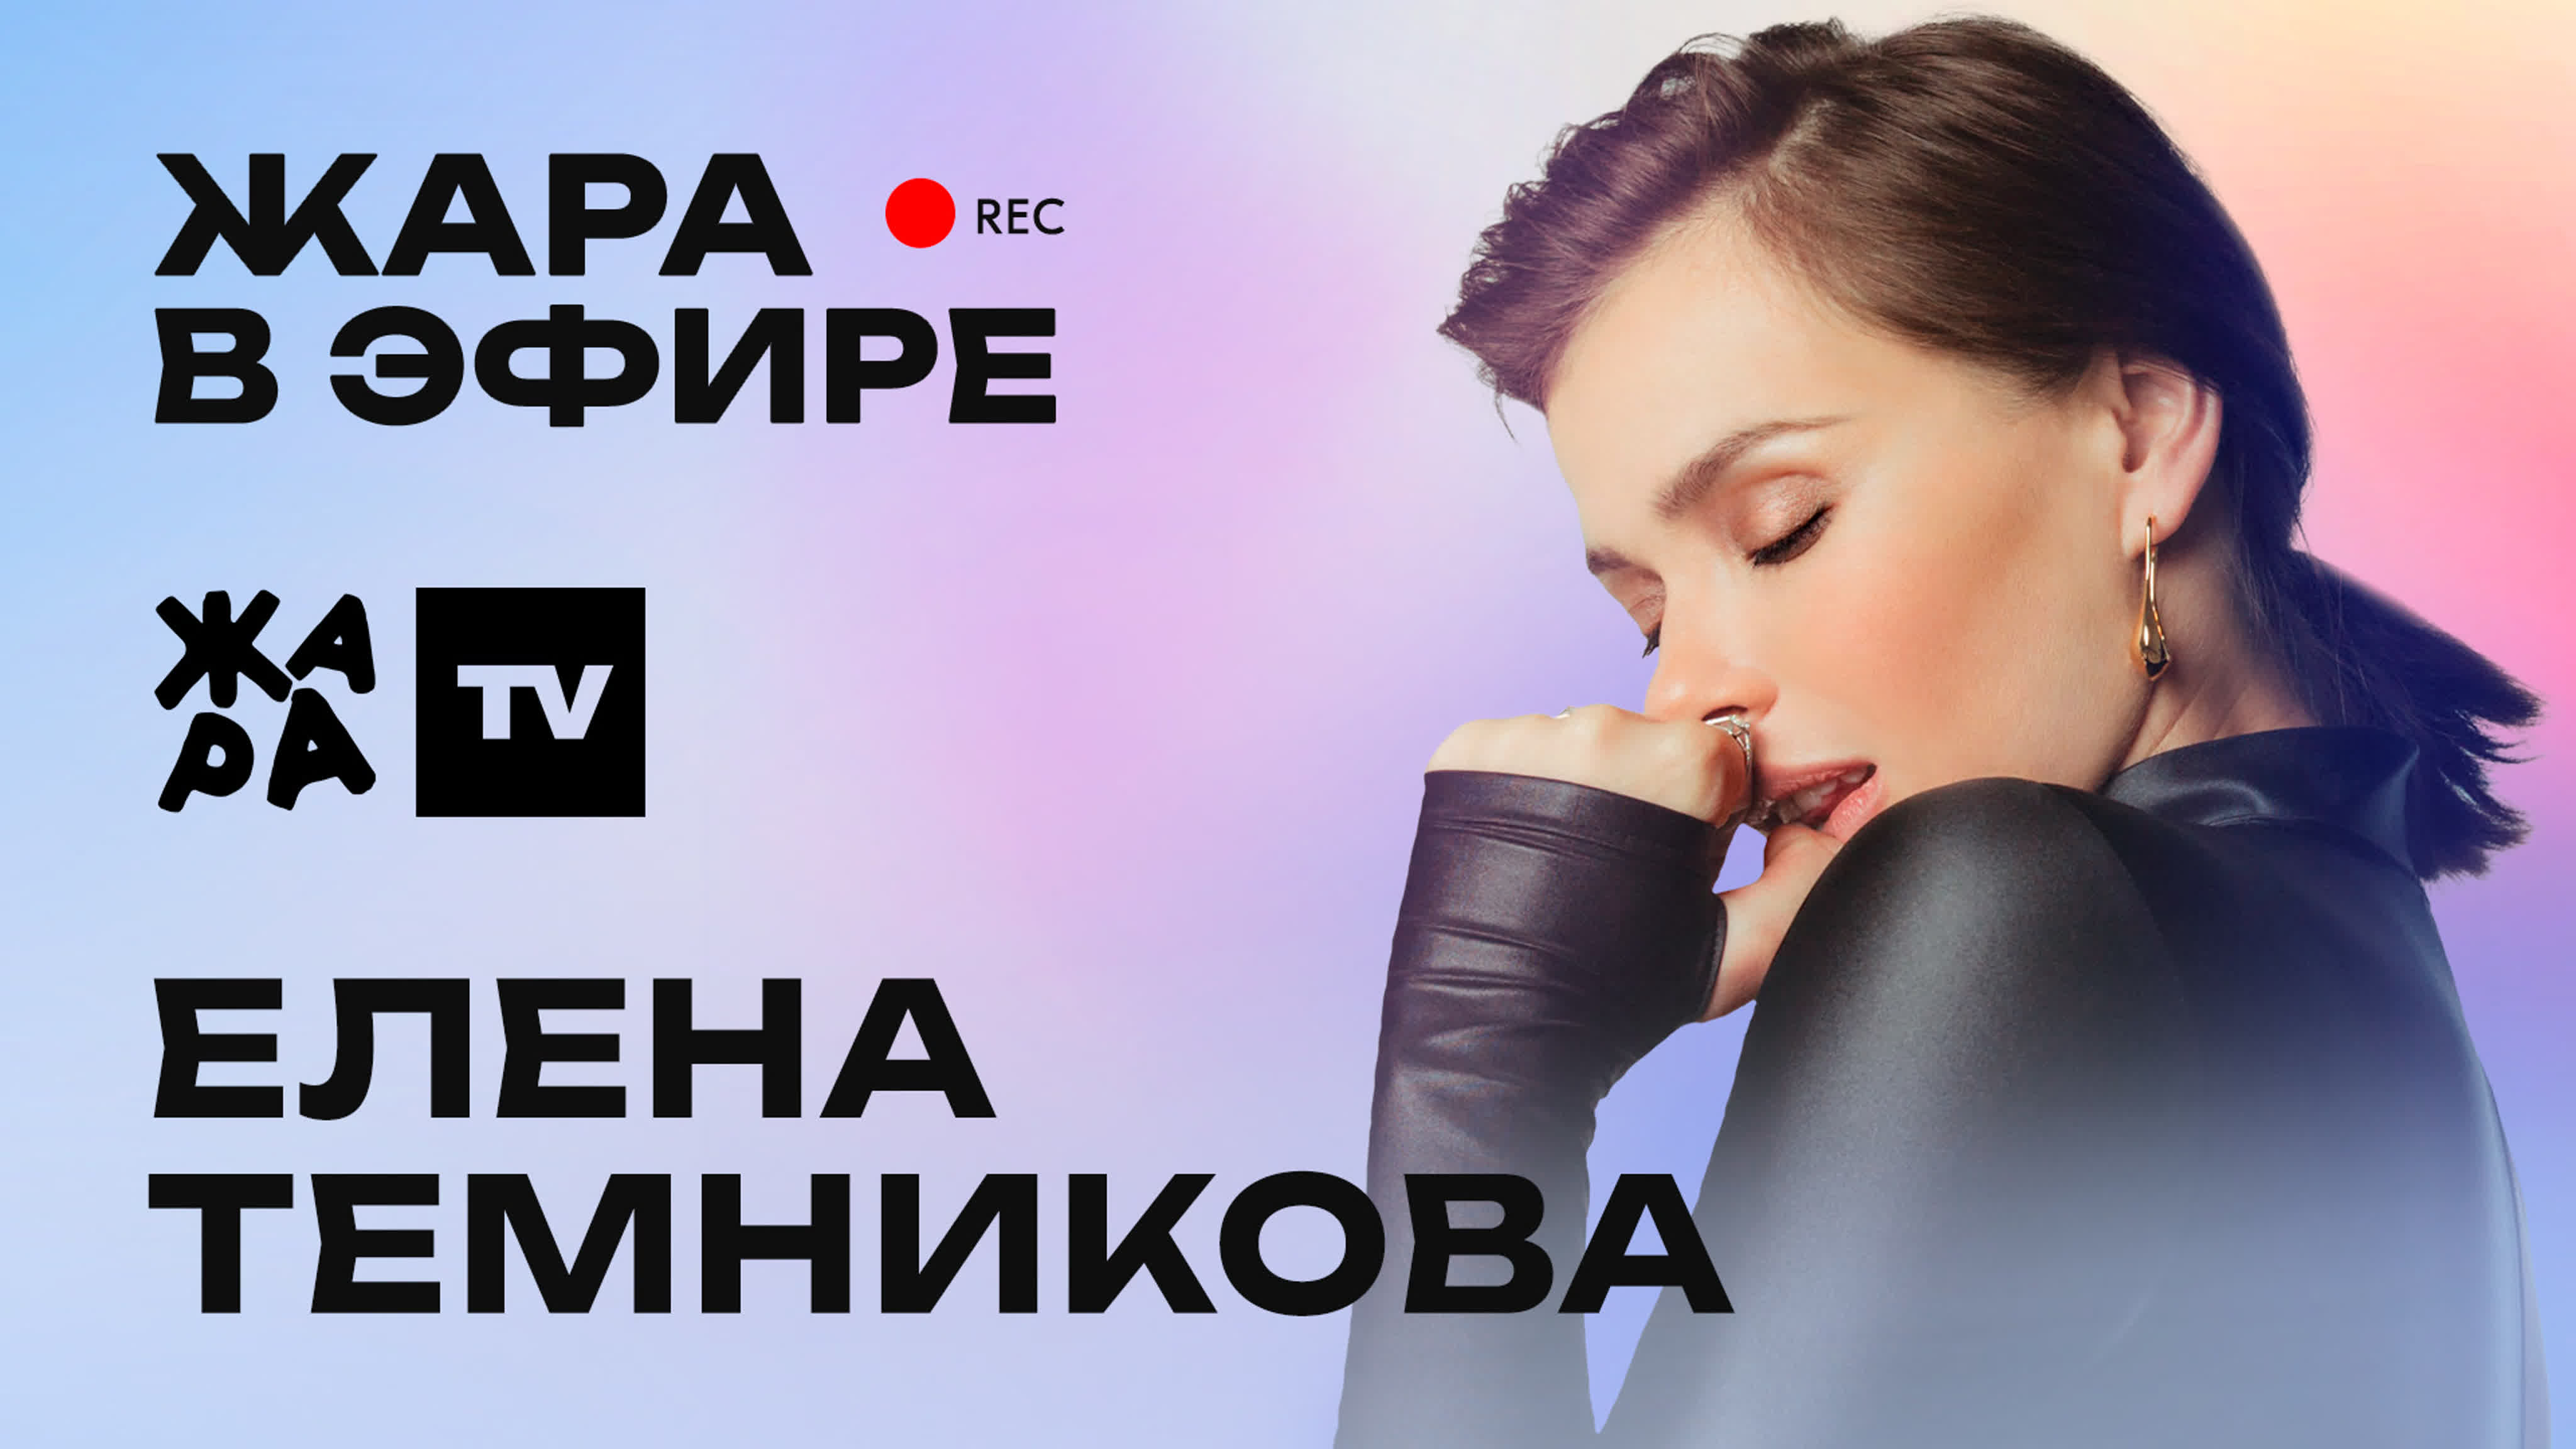 Елена темникова рассказала о новом треке и участии в проекте 